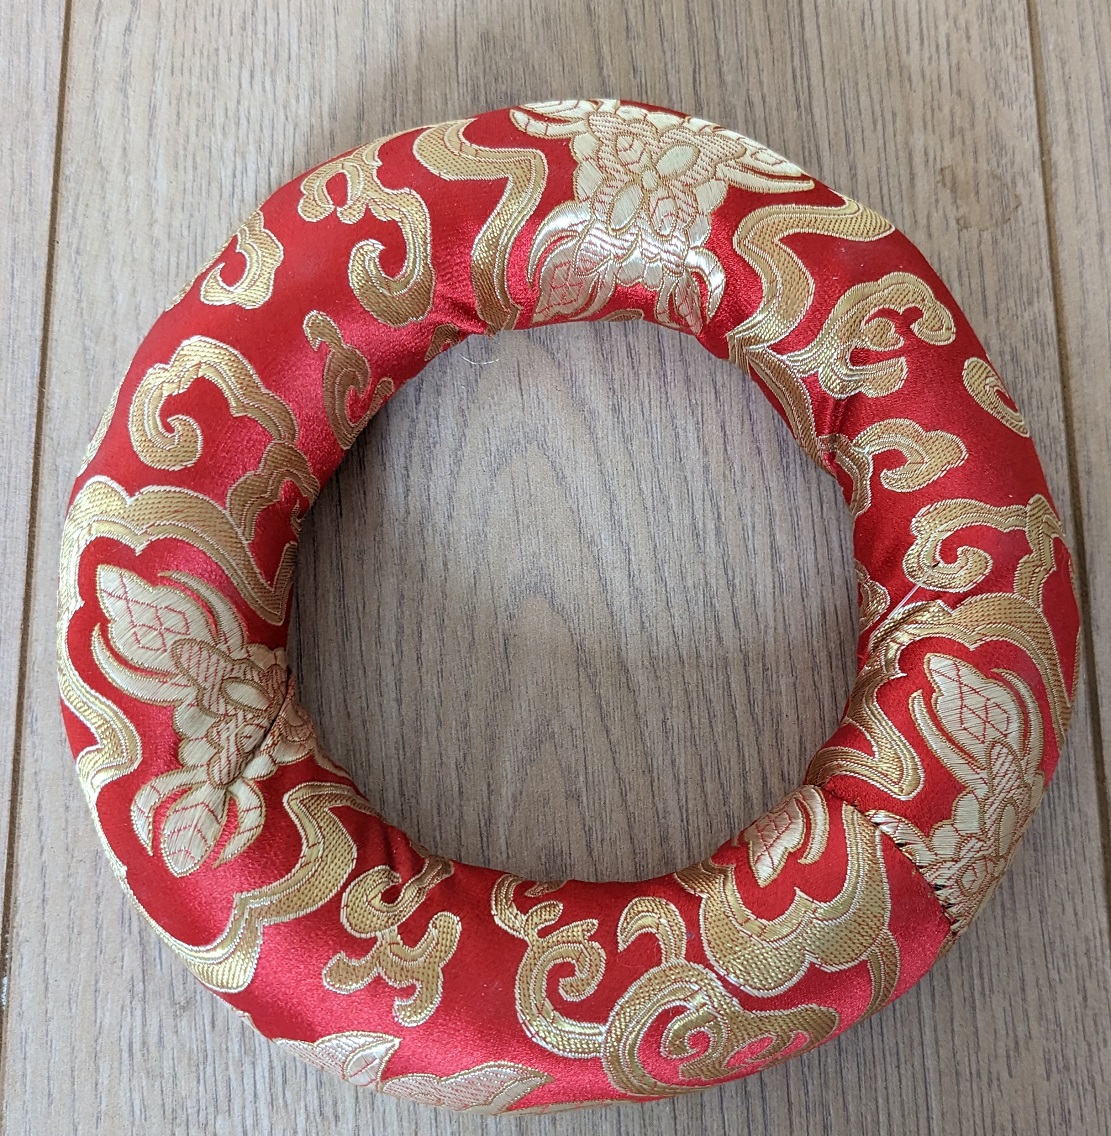 Tibetan Bowl Ring Cushion 18cm Diameter Red